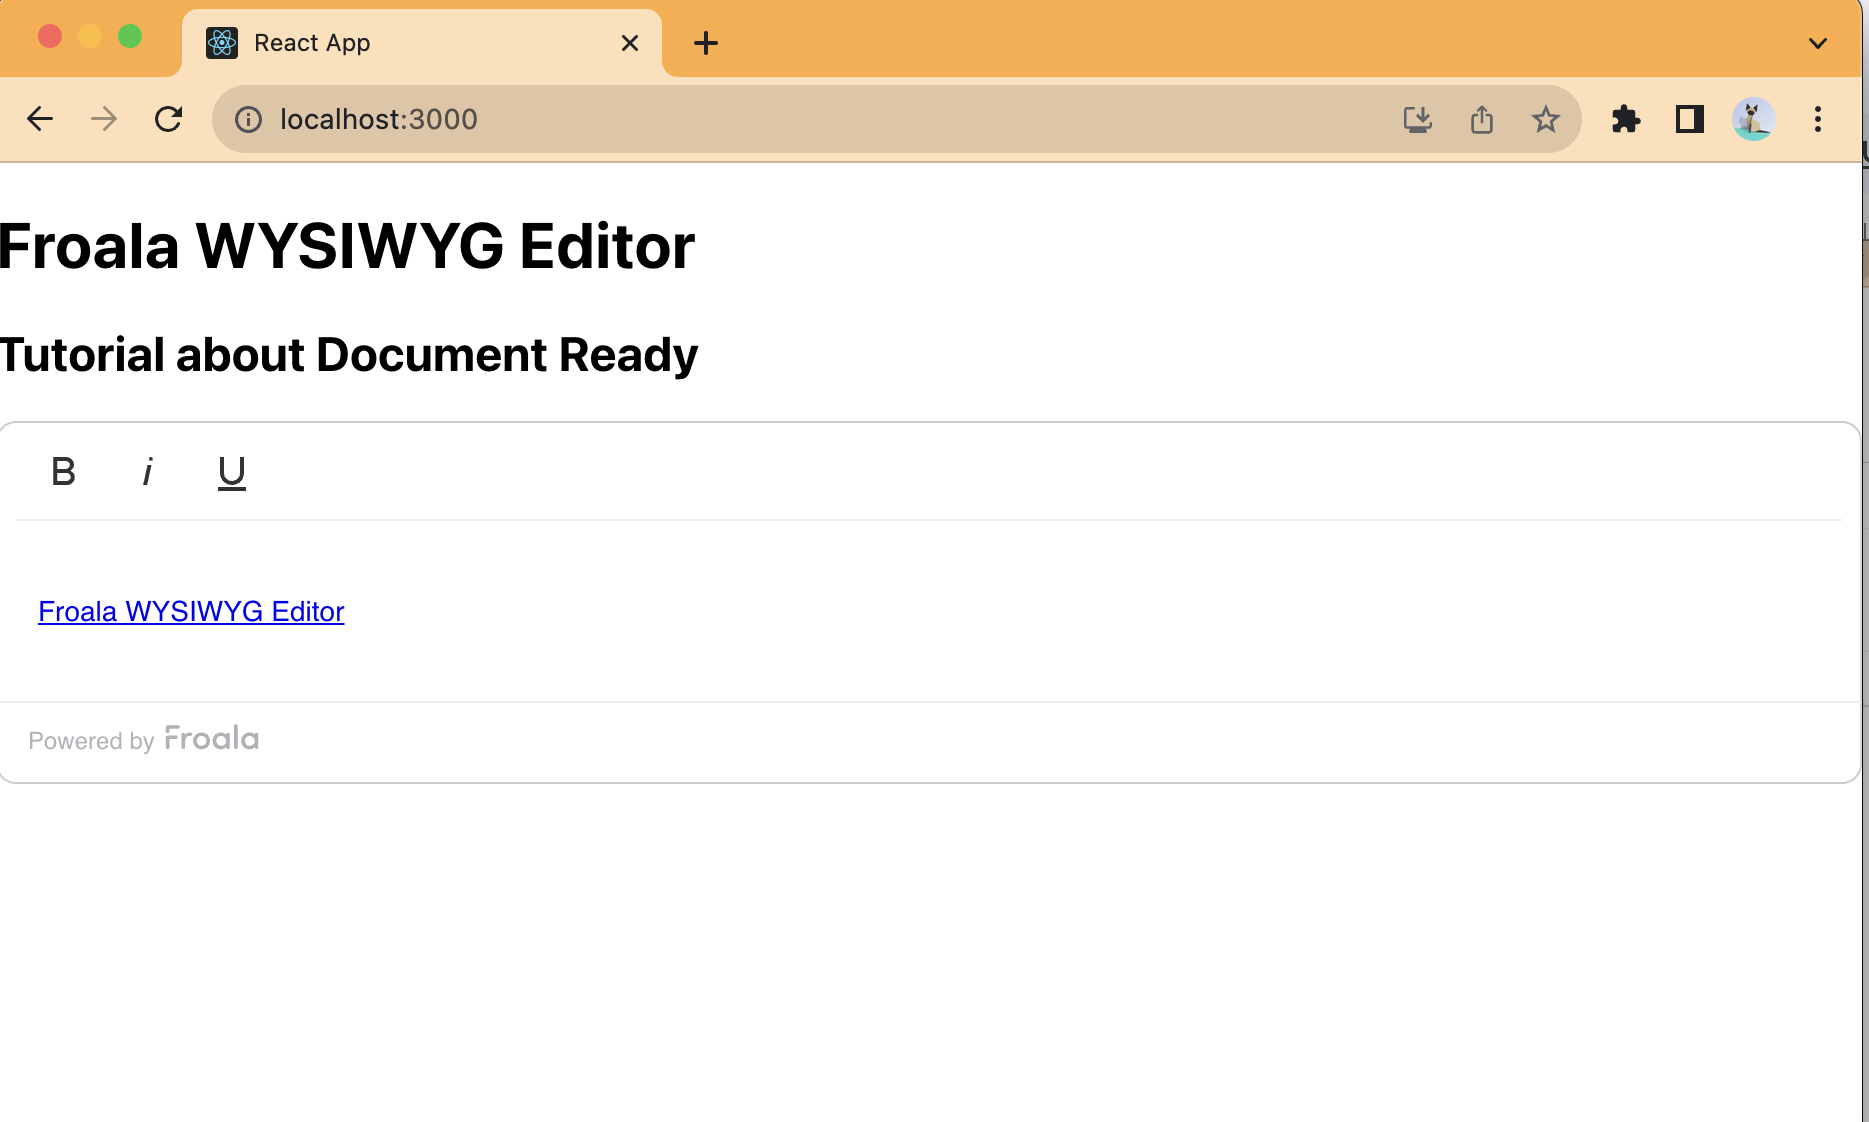 Customized WYSIWYG Editor